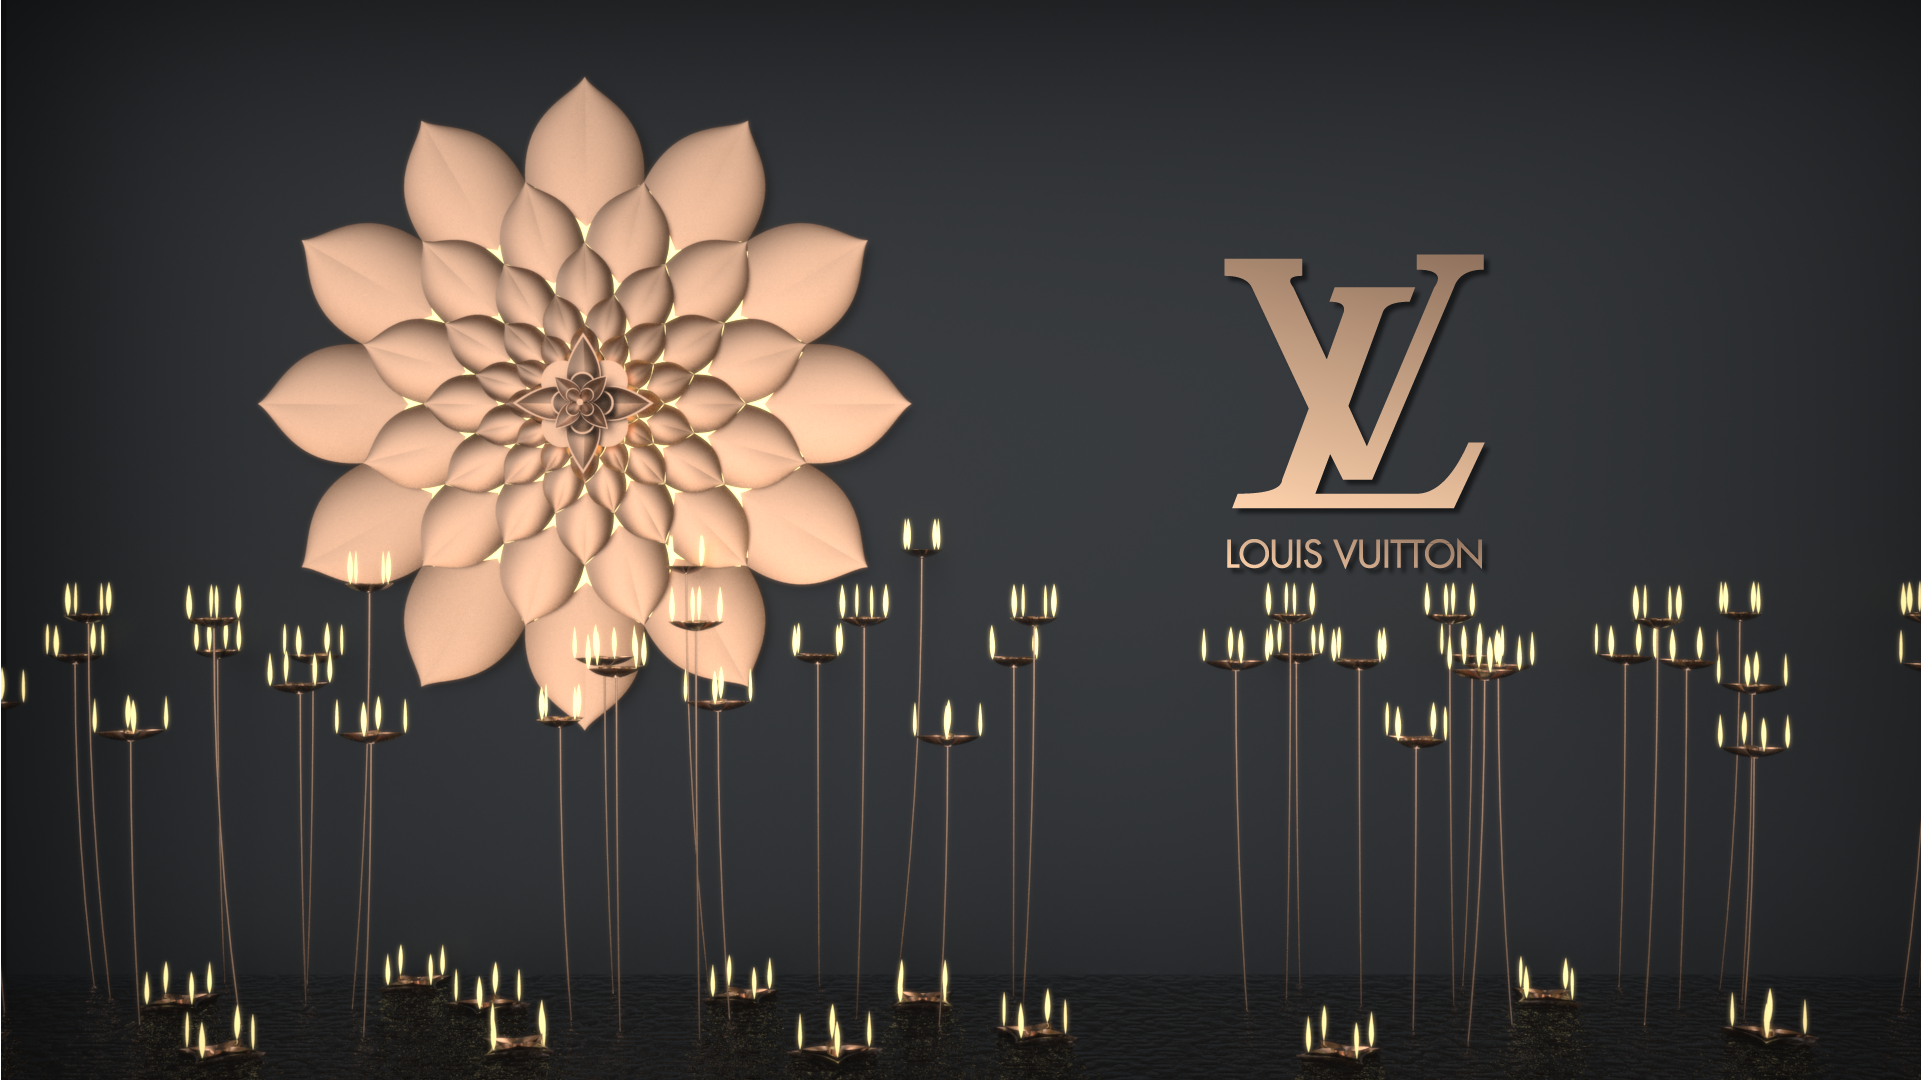 Louis Vuitton — kibadesign